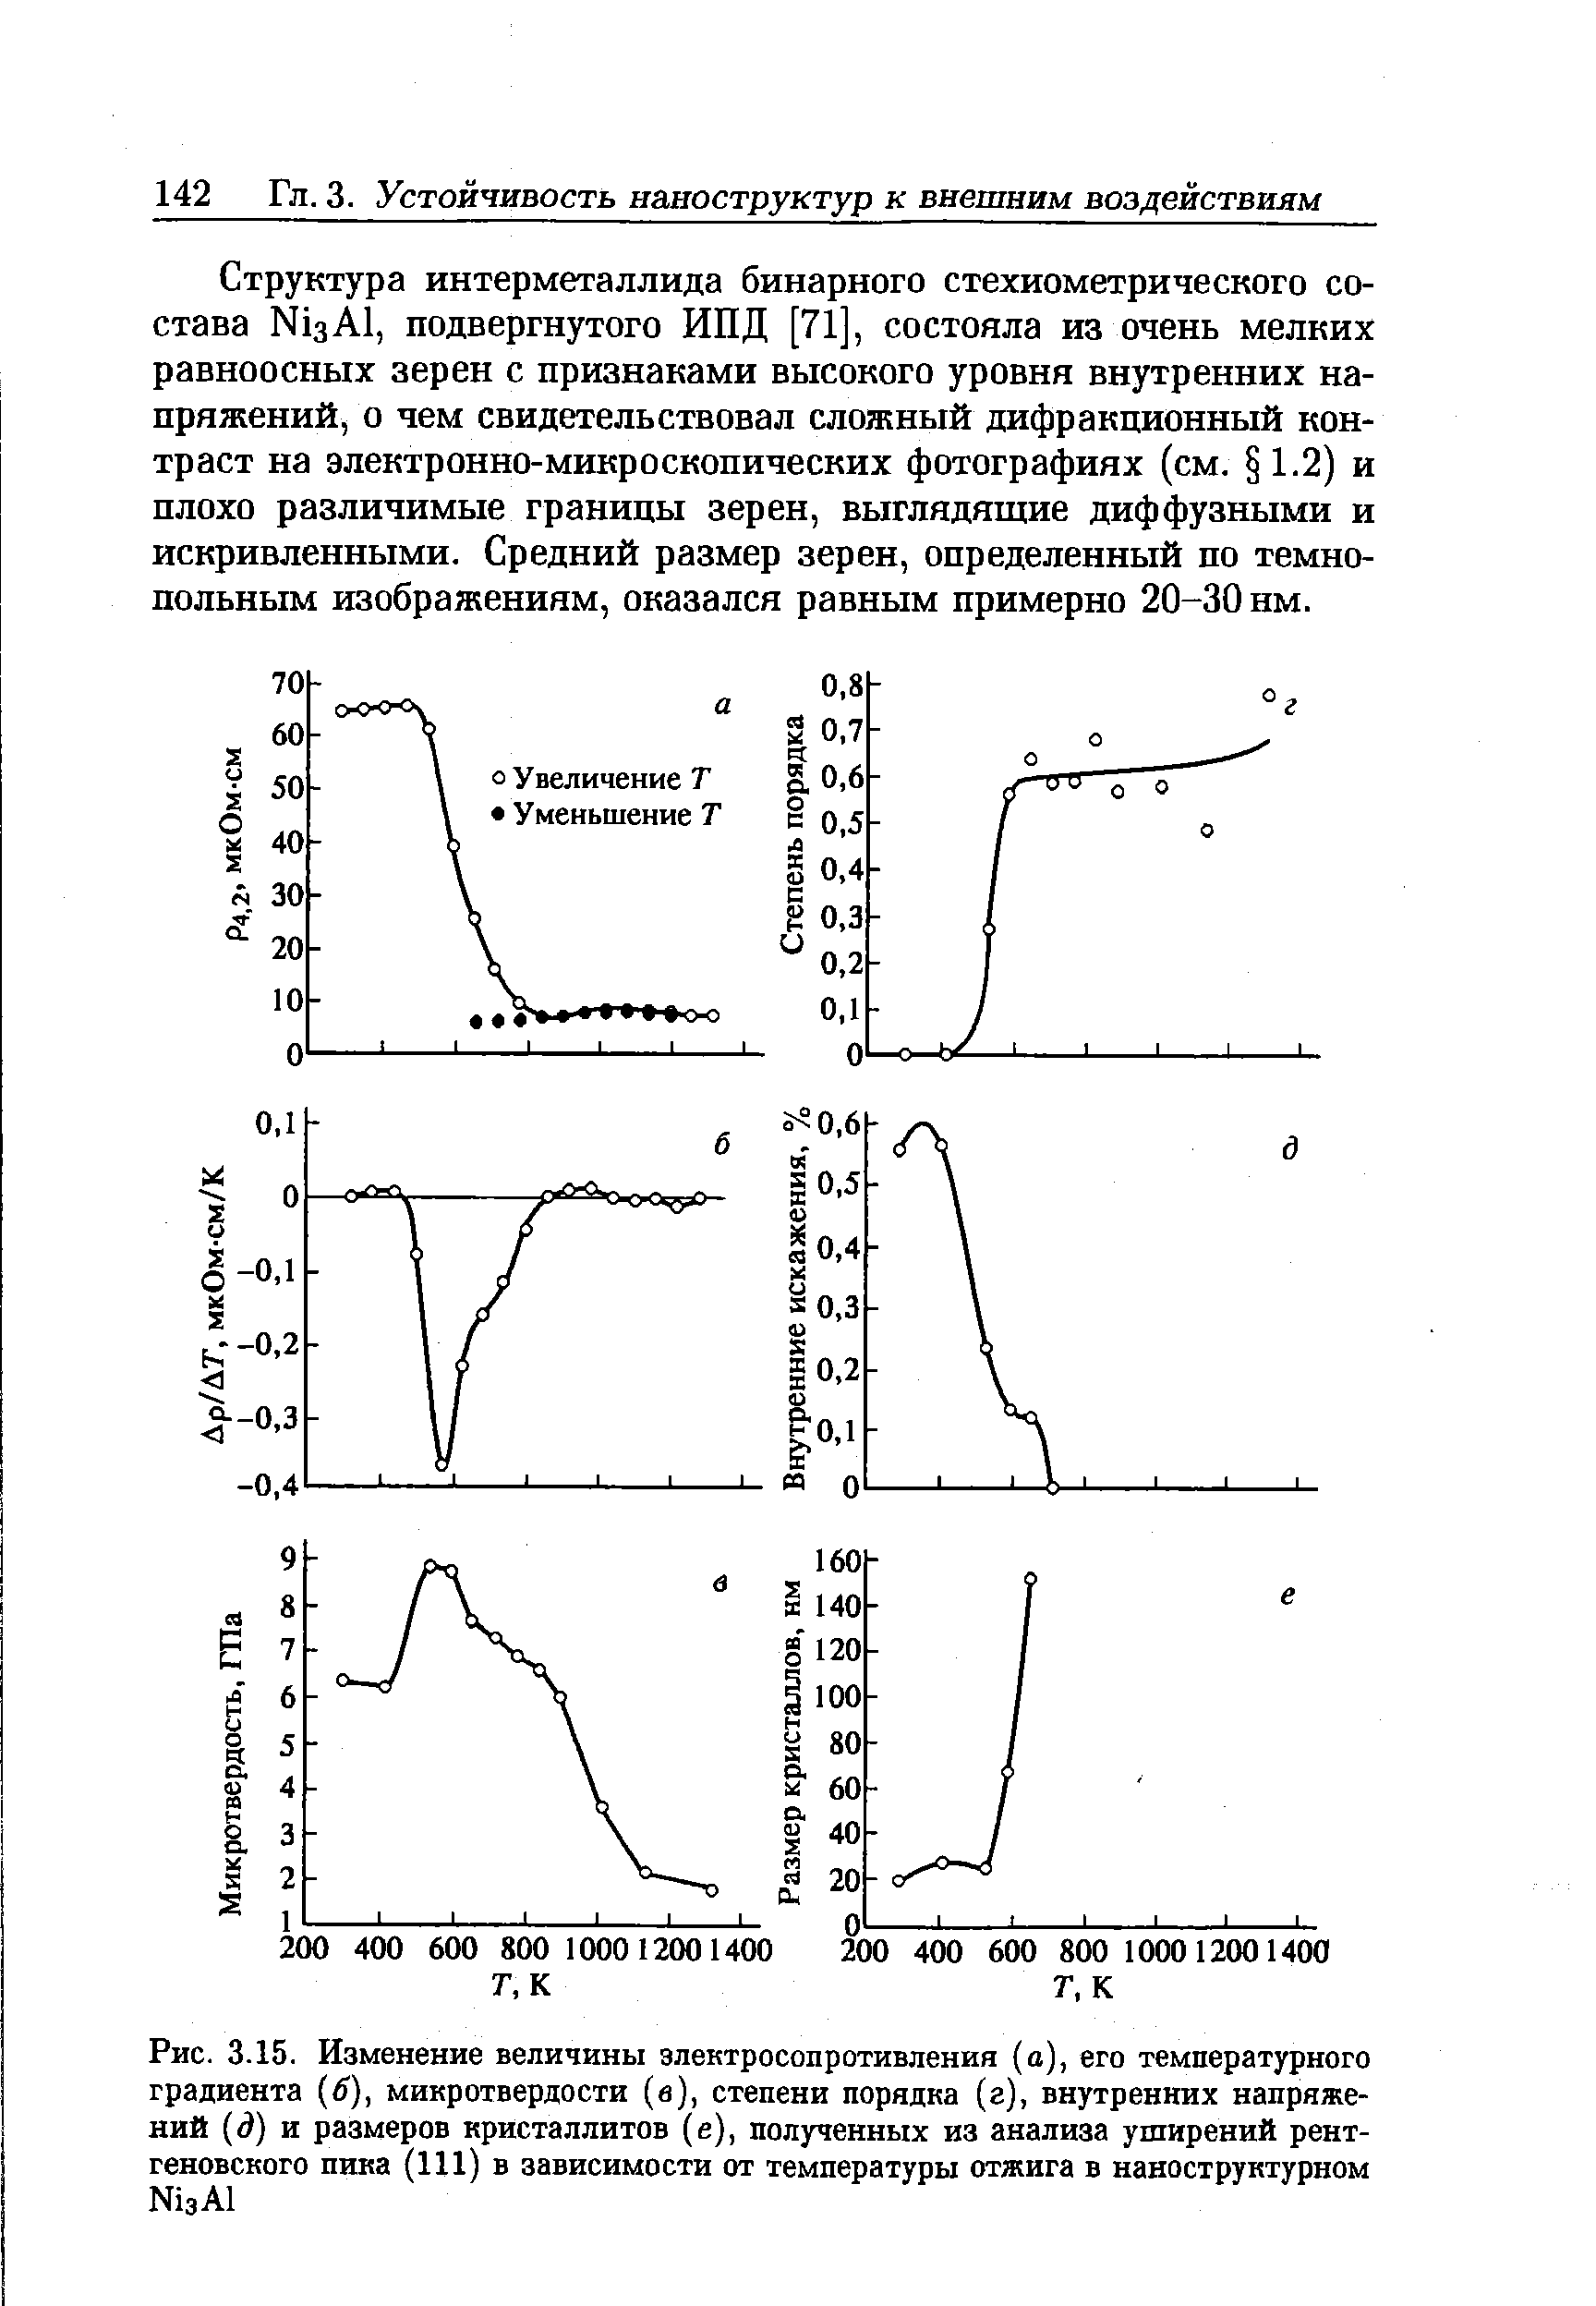 Рис. 3.15. Изменение величины электросопротивления (а), его <a href="/info/18824">температурного градиента</a> (6), микротвердости (в), степени порядка (г), <a href="/info/1458">внутренних напряжений</a> (д) и размеров кристаллитов (е), полученных из анализа уширений рентгеновского пика (111) в зависимости от <a href="/info/450129">температуры отжига</a> в наноструктурном №зА1
